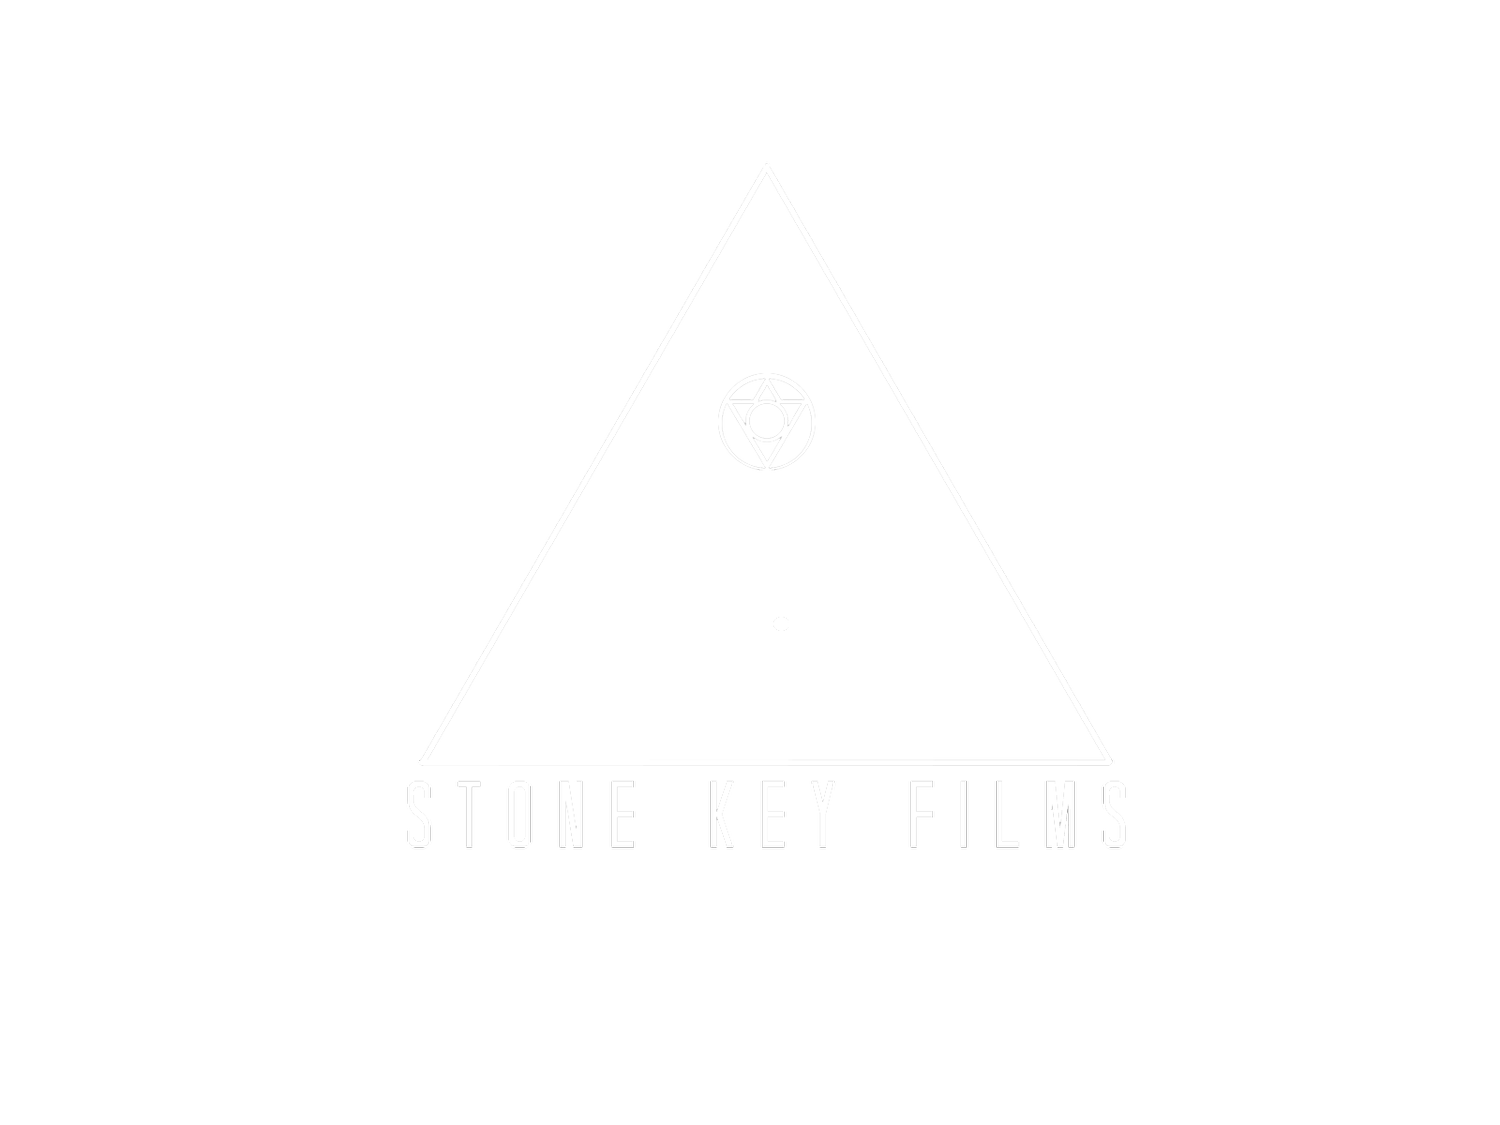 Stone Key Films